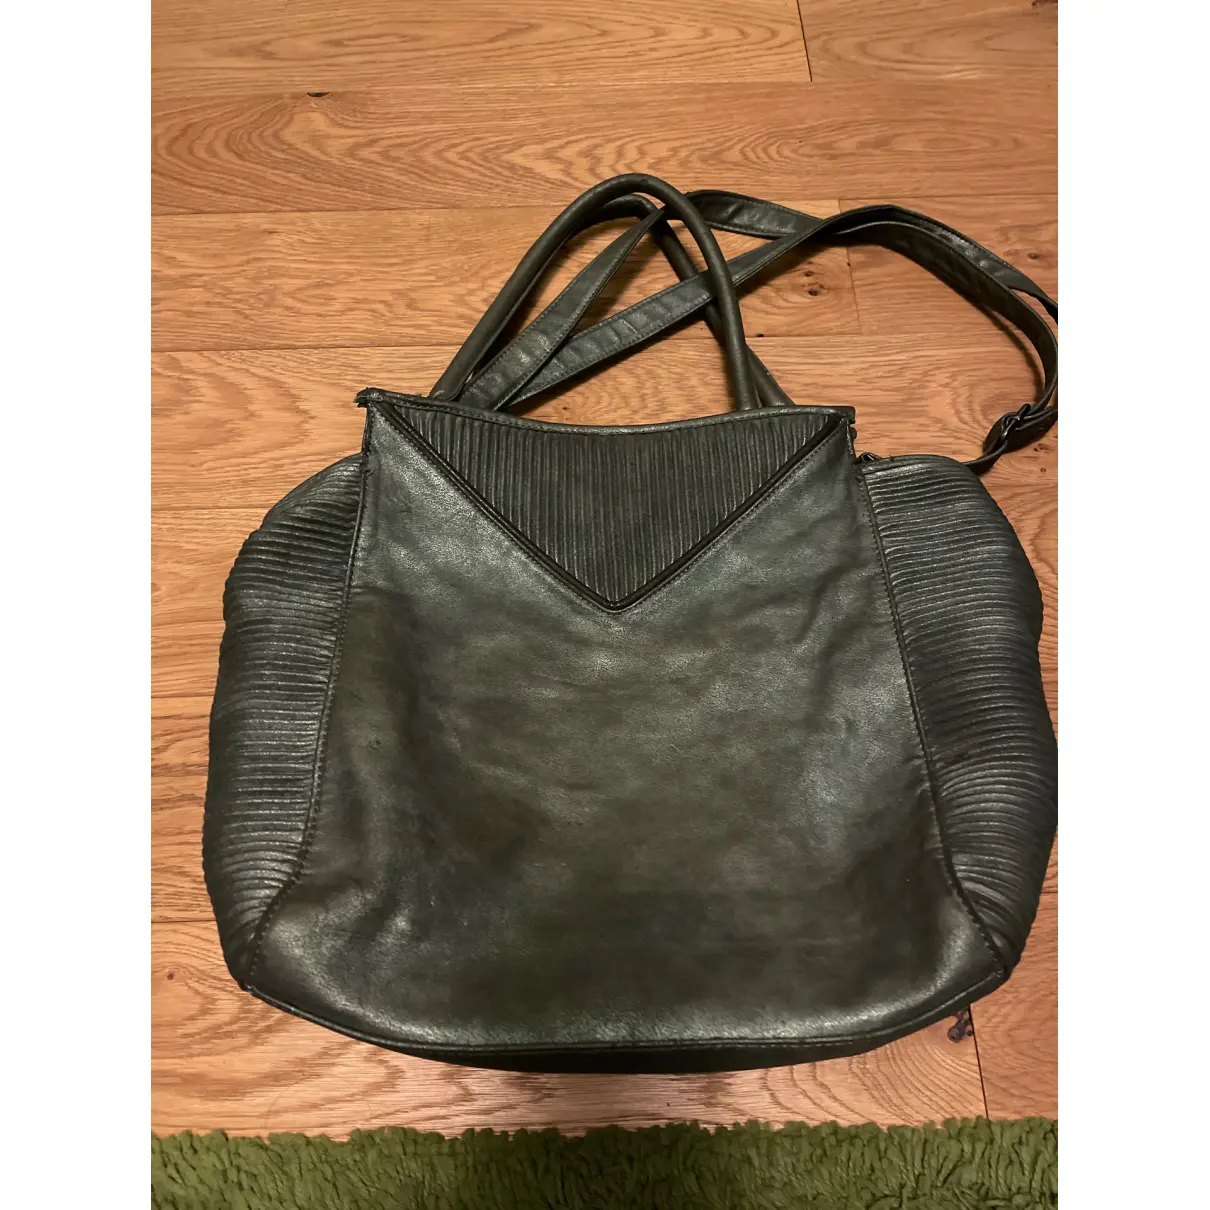 Buy GIO CELLINI Cloth handbag online